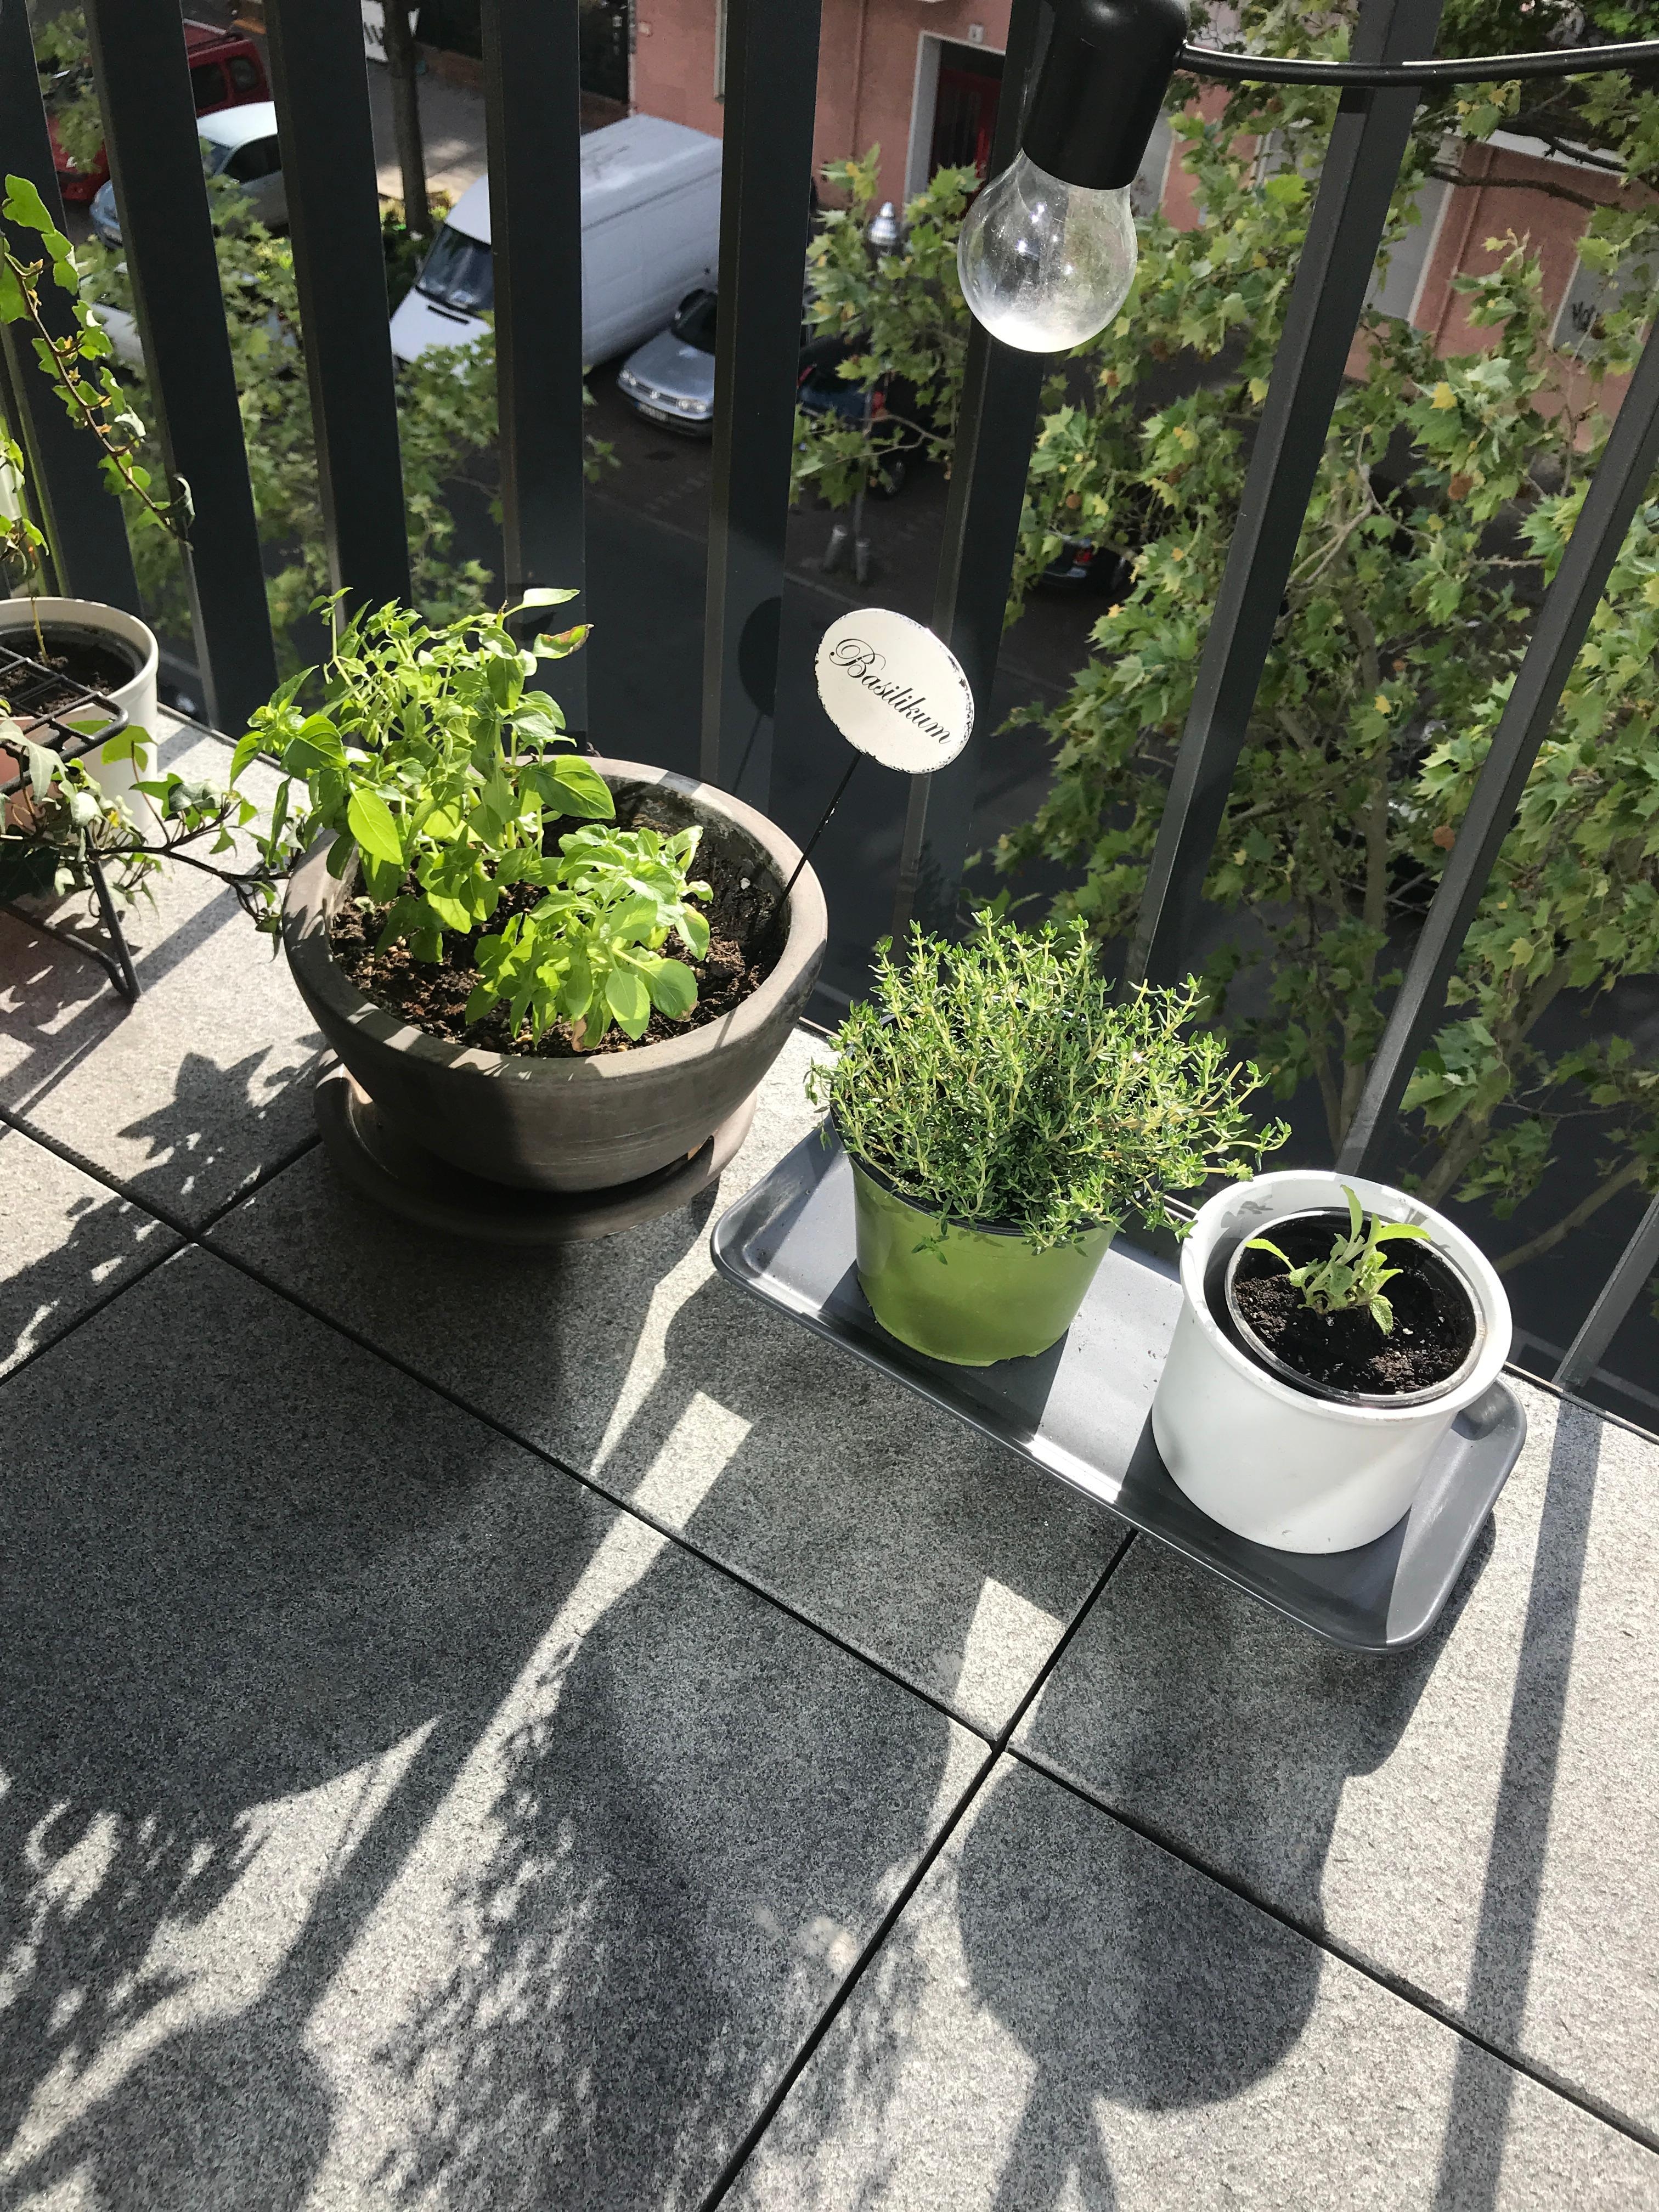 Mein kleiner Kräutergarten 🌱🍃
#balkon #zuhause #frühling